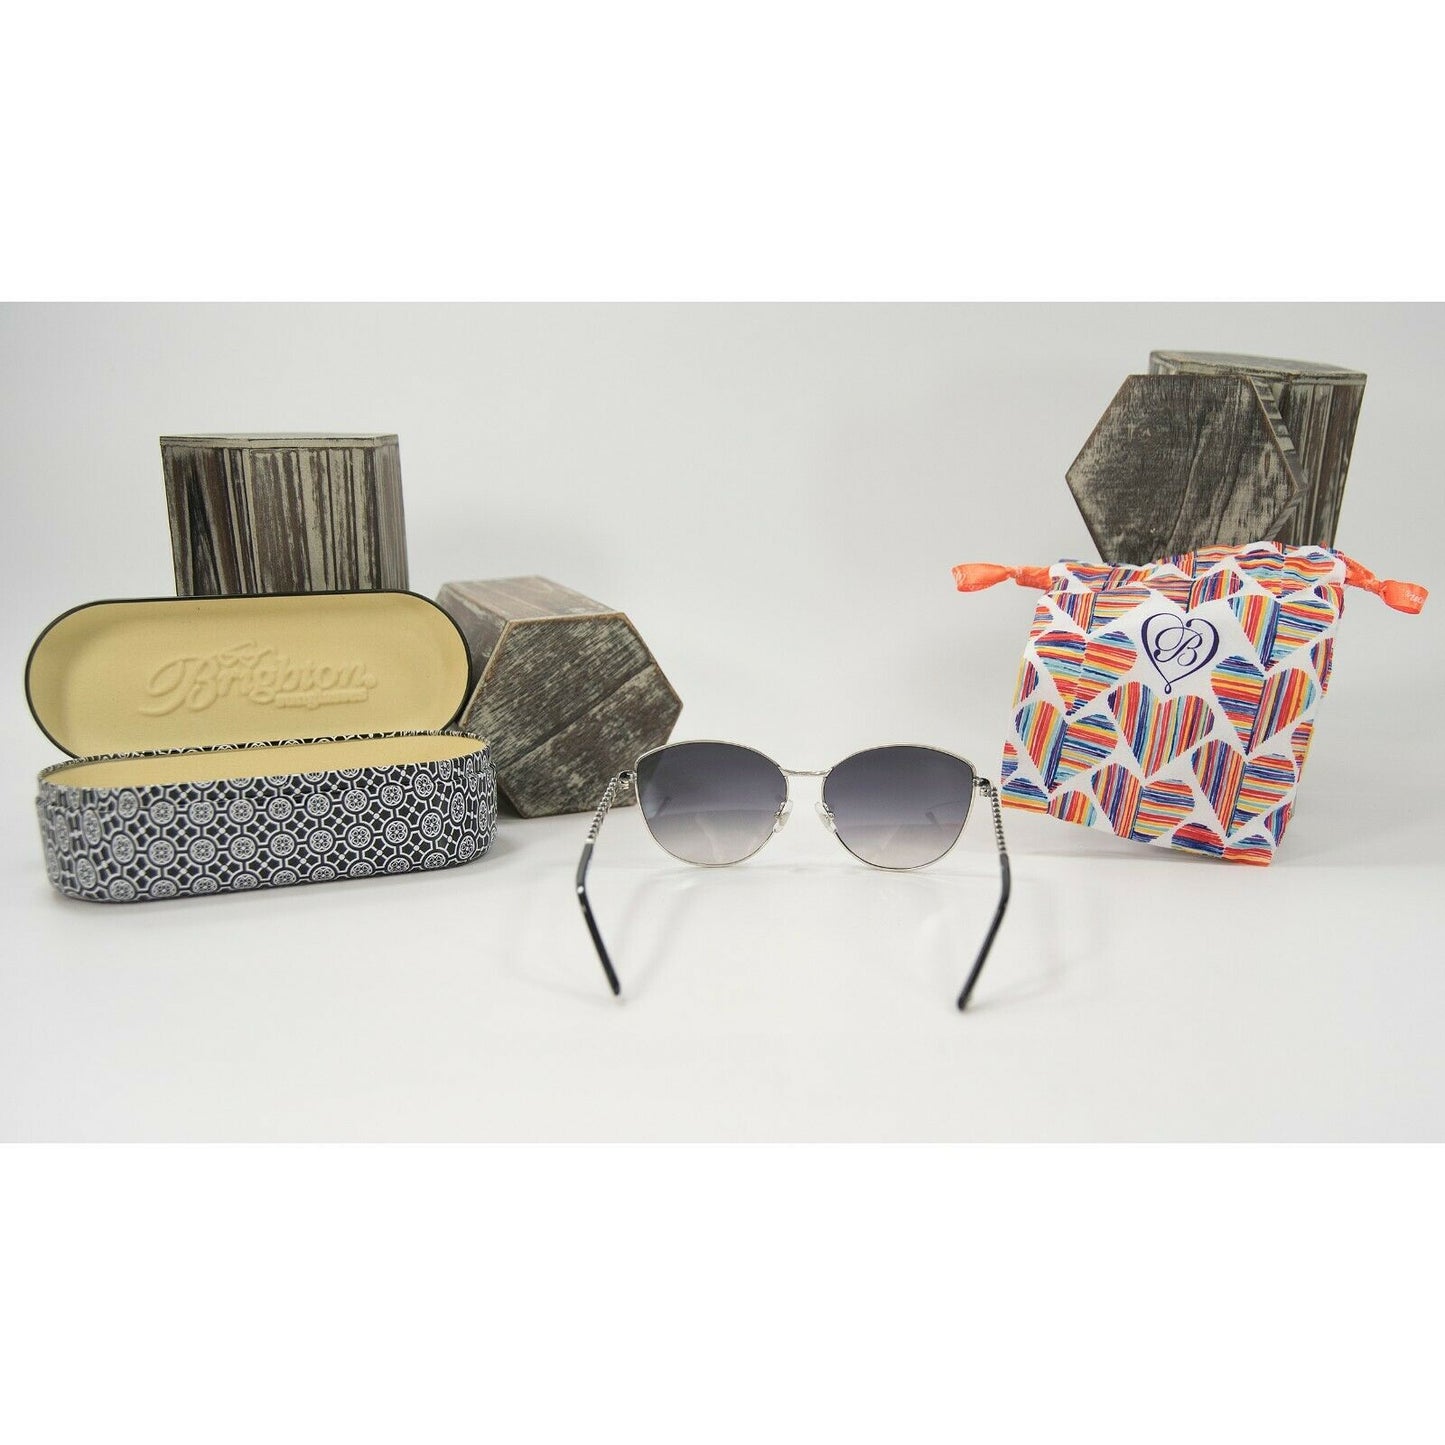 Brighton Toledo Alto Black Silver Crystal Sunglasses with Tin Case